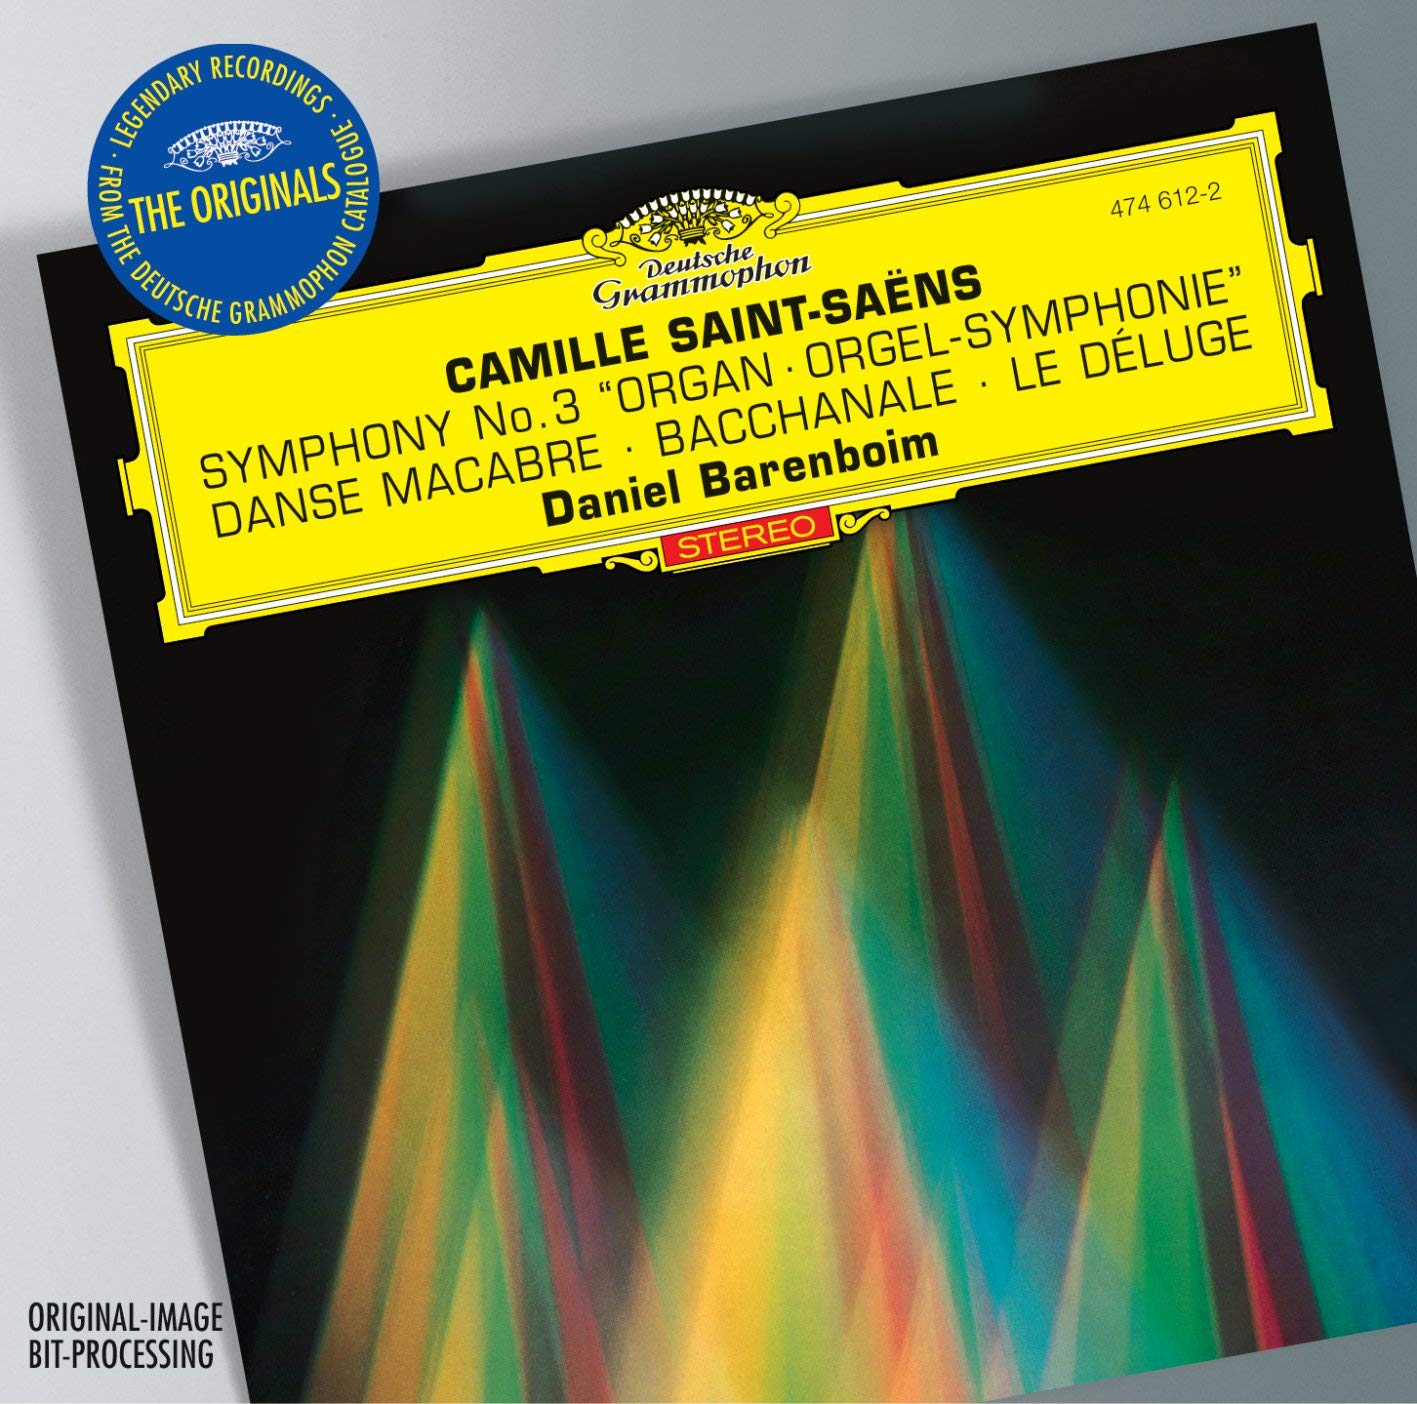 Symphony No. 3 'Organ Symphony' | Daniel Barenboim, Chicago Symphony Orchestra, Orchestre de Paris image